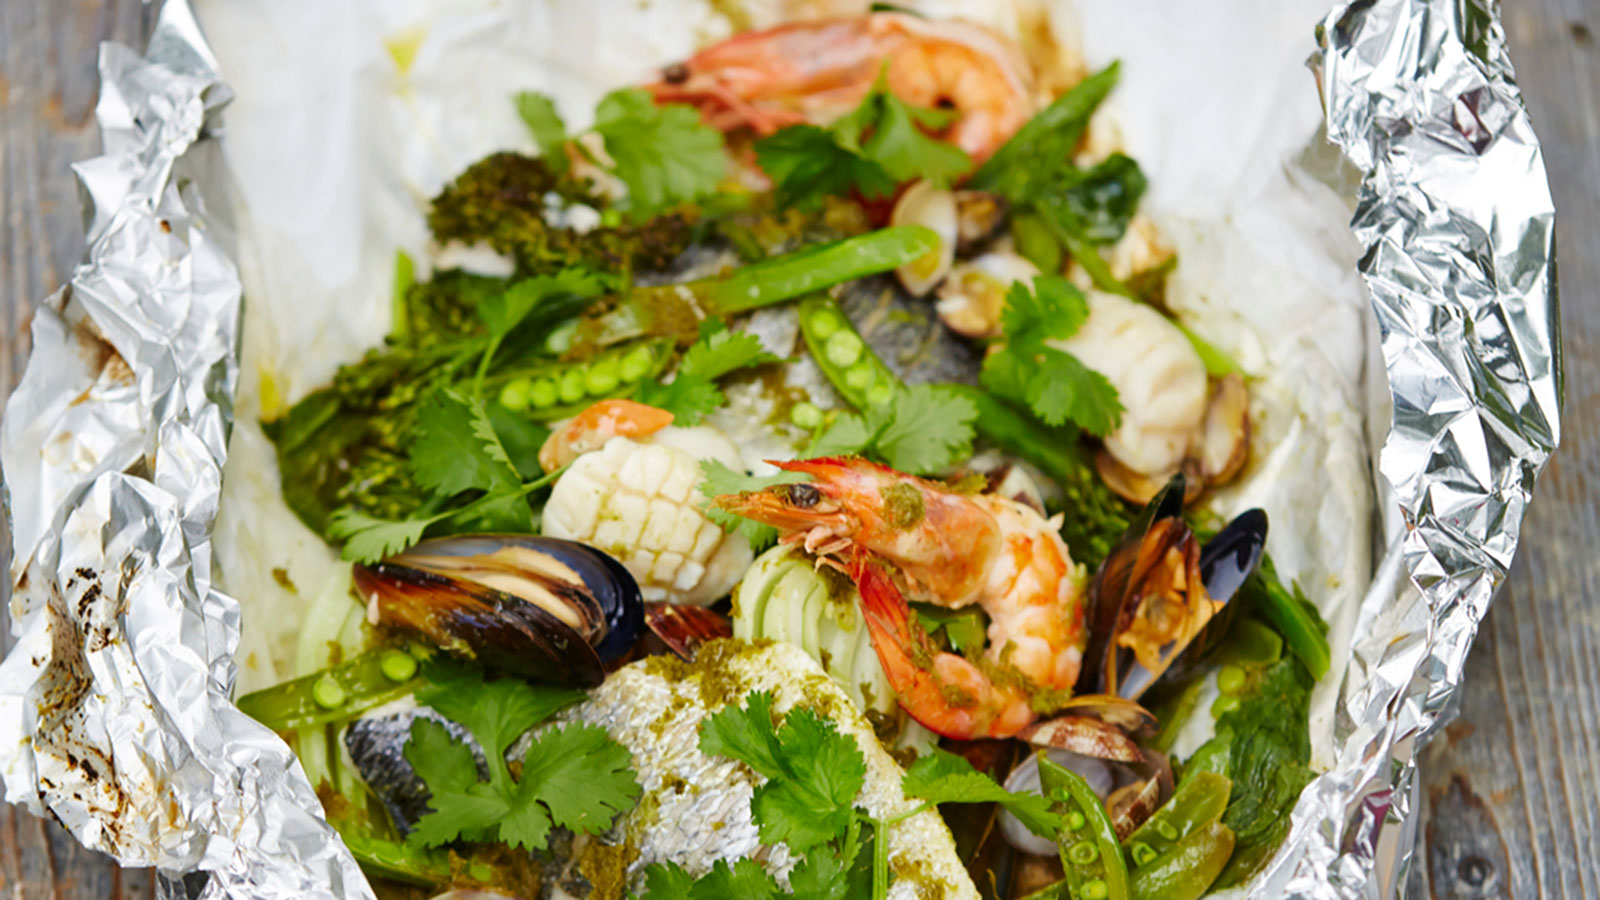 Paquete de marisco al estilo asiático con adobo fresco y picante - Jamie  Oliver - Receta - Canal Cocina